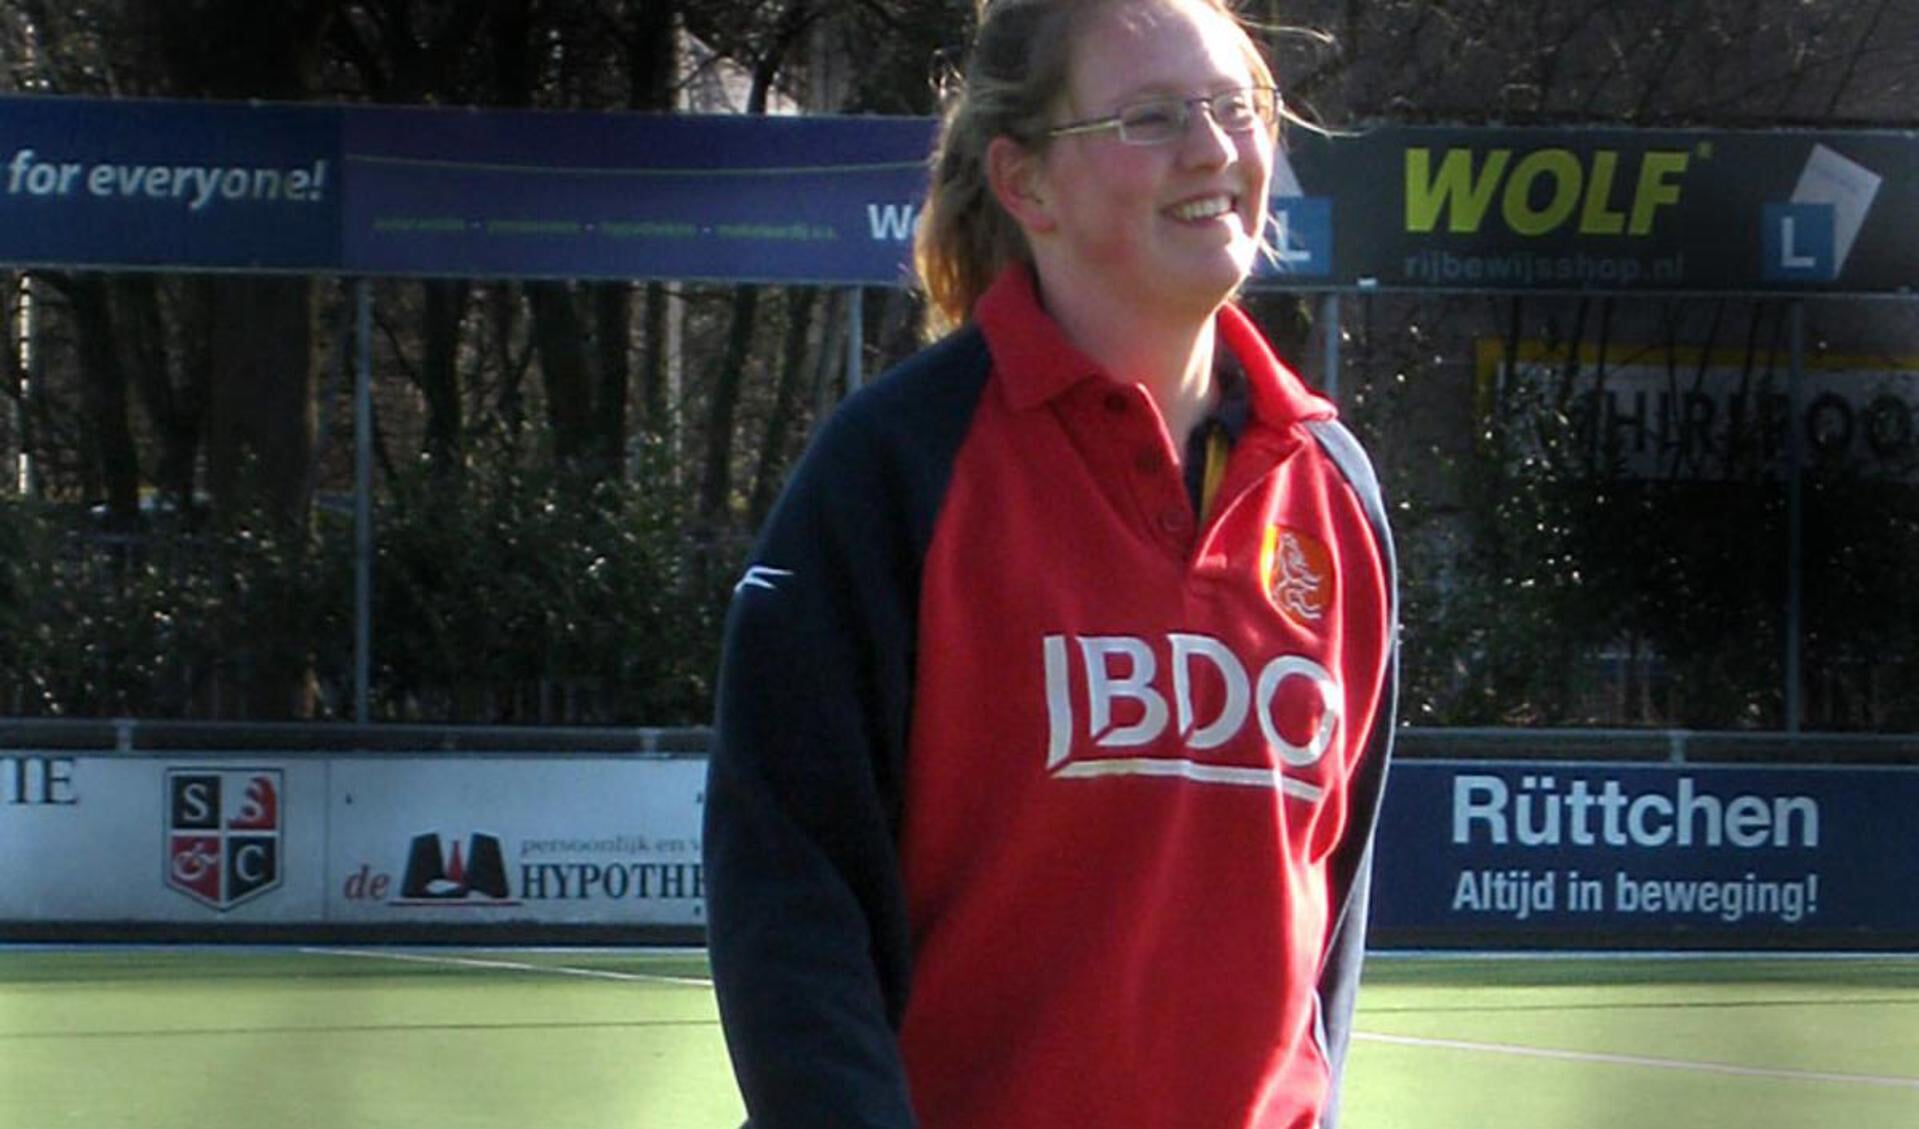 Hockeyscheidsrechter Joanna Busink uit Prinsenbeek. foto Pia Potter